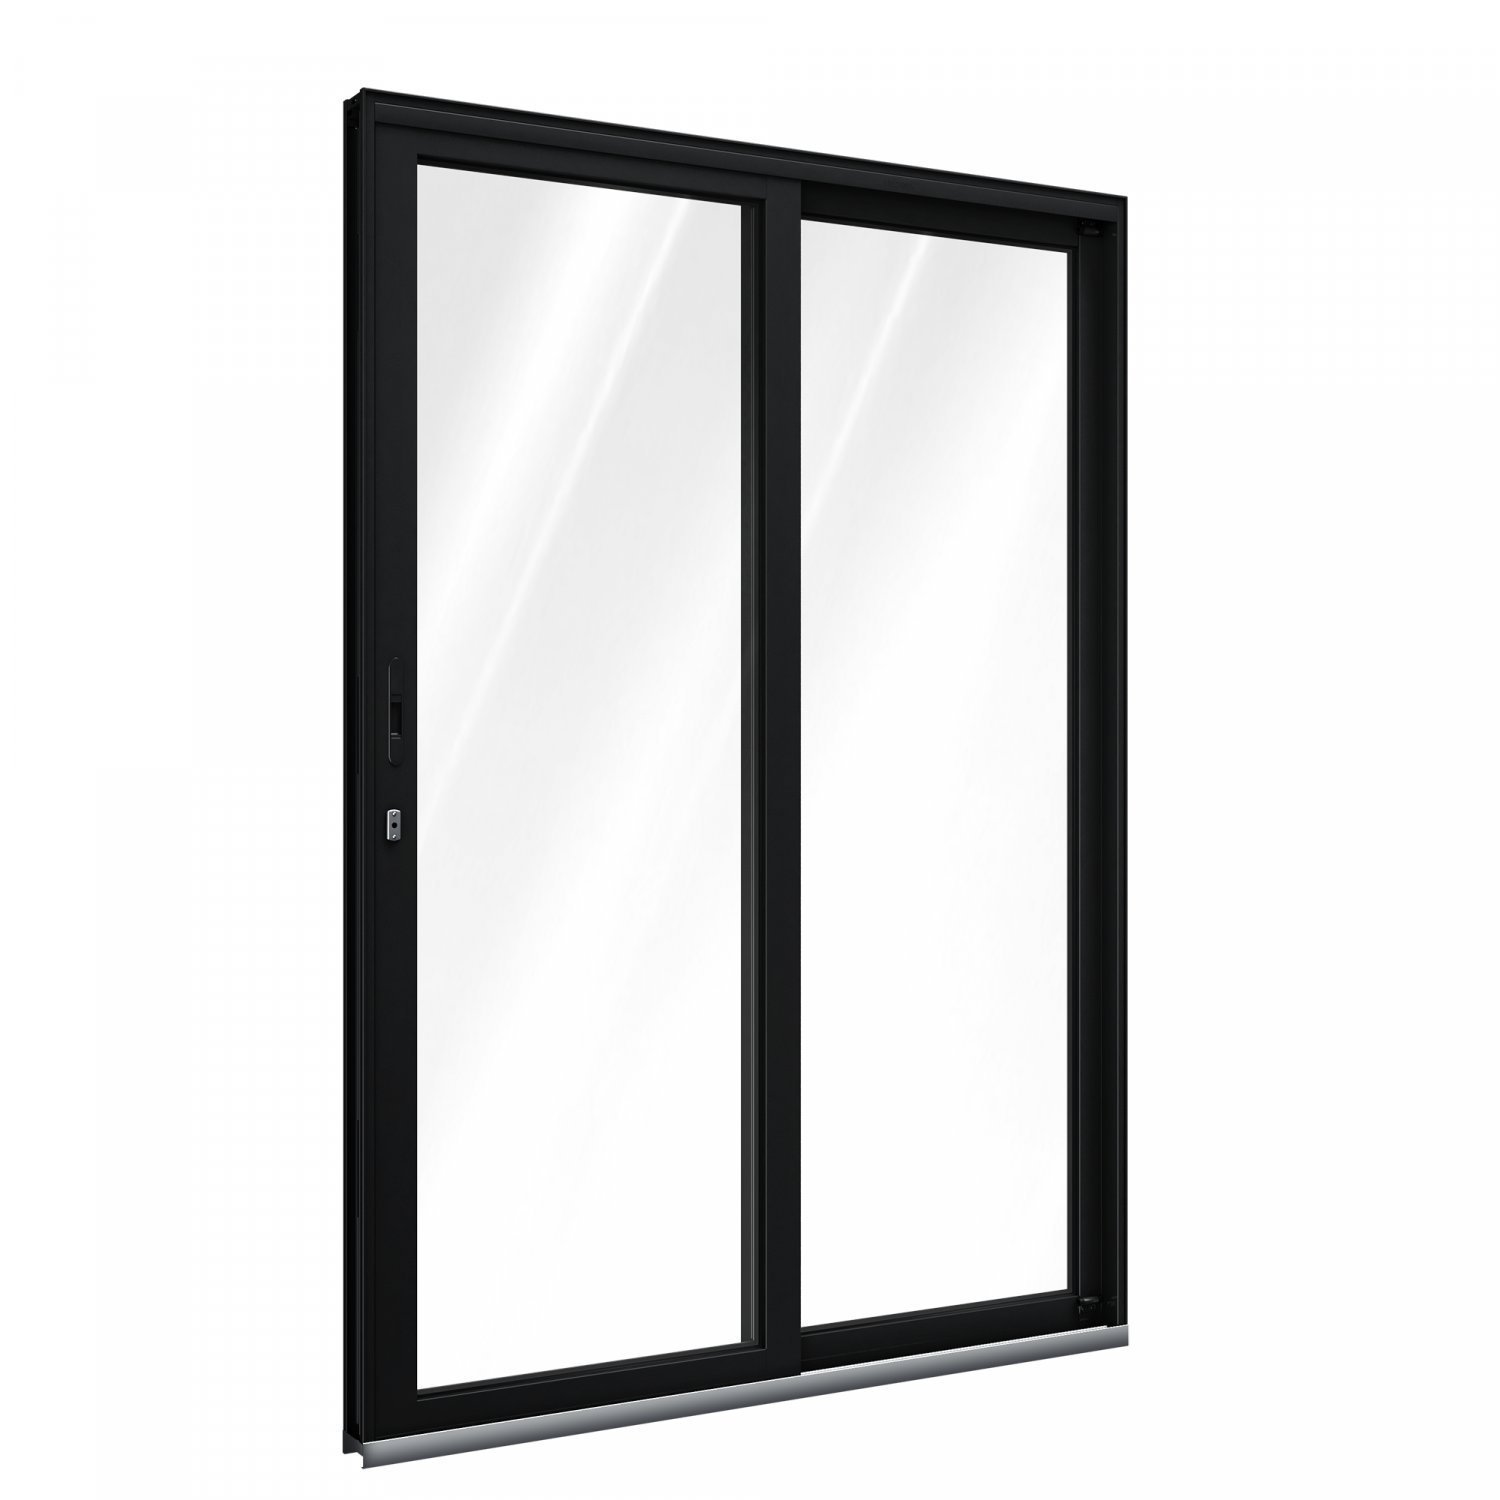 Porta de Correr Aluminio 2 Folhas com Vidro Abertura Lateral 215cmx150cm Lucasa 